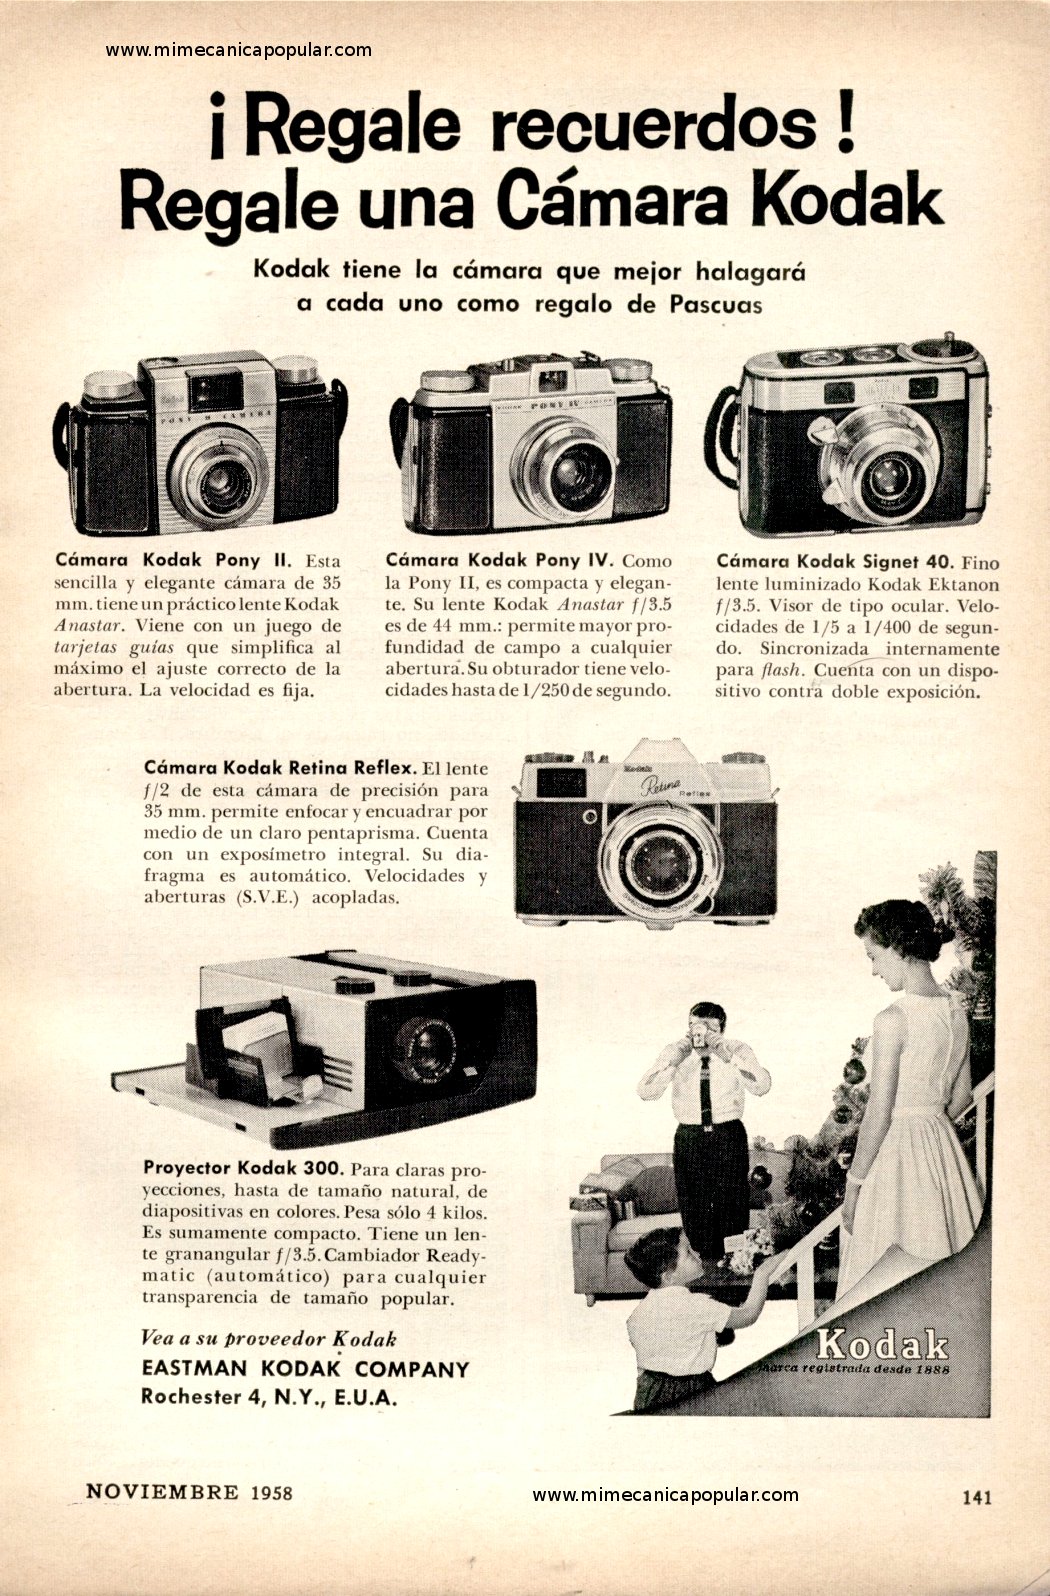 Publicidad - Regale una Cámara Kodak - Noviembre 1958